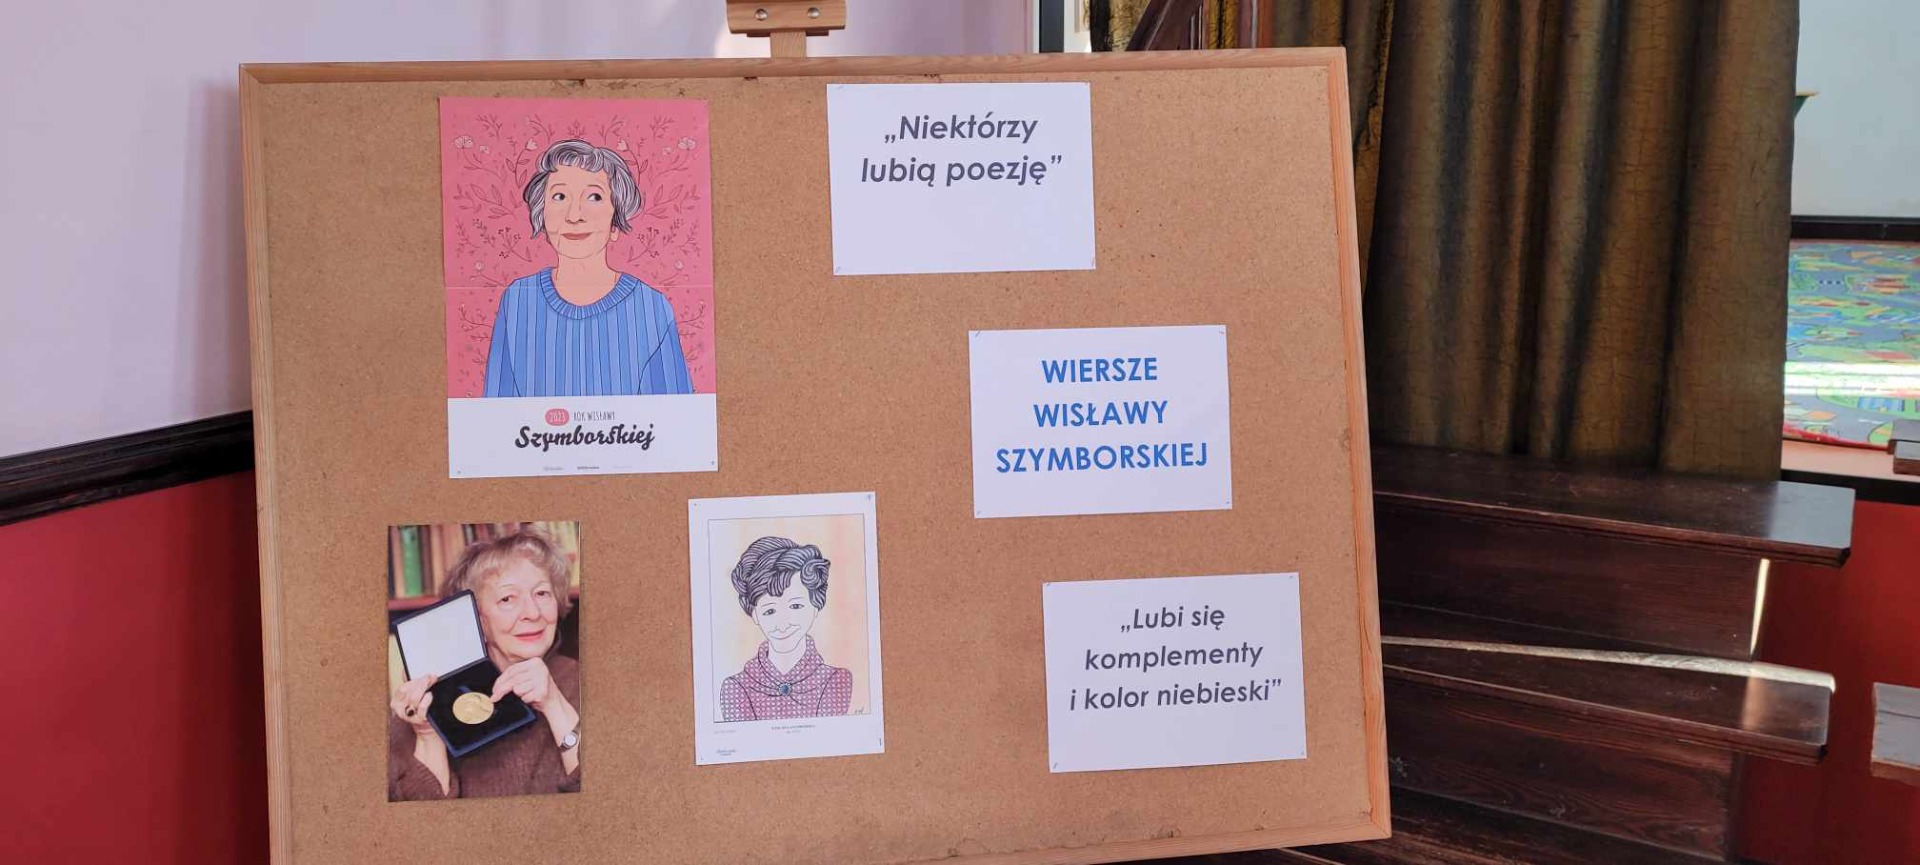 Mała wystawa portretów oraz tomików Wisławy Szymborskiej.